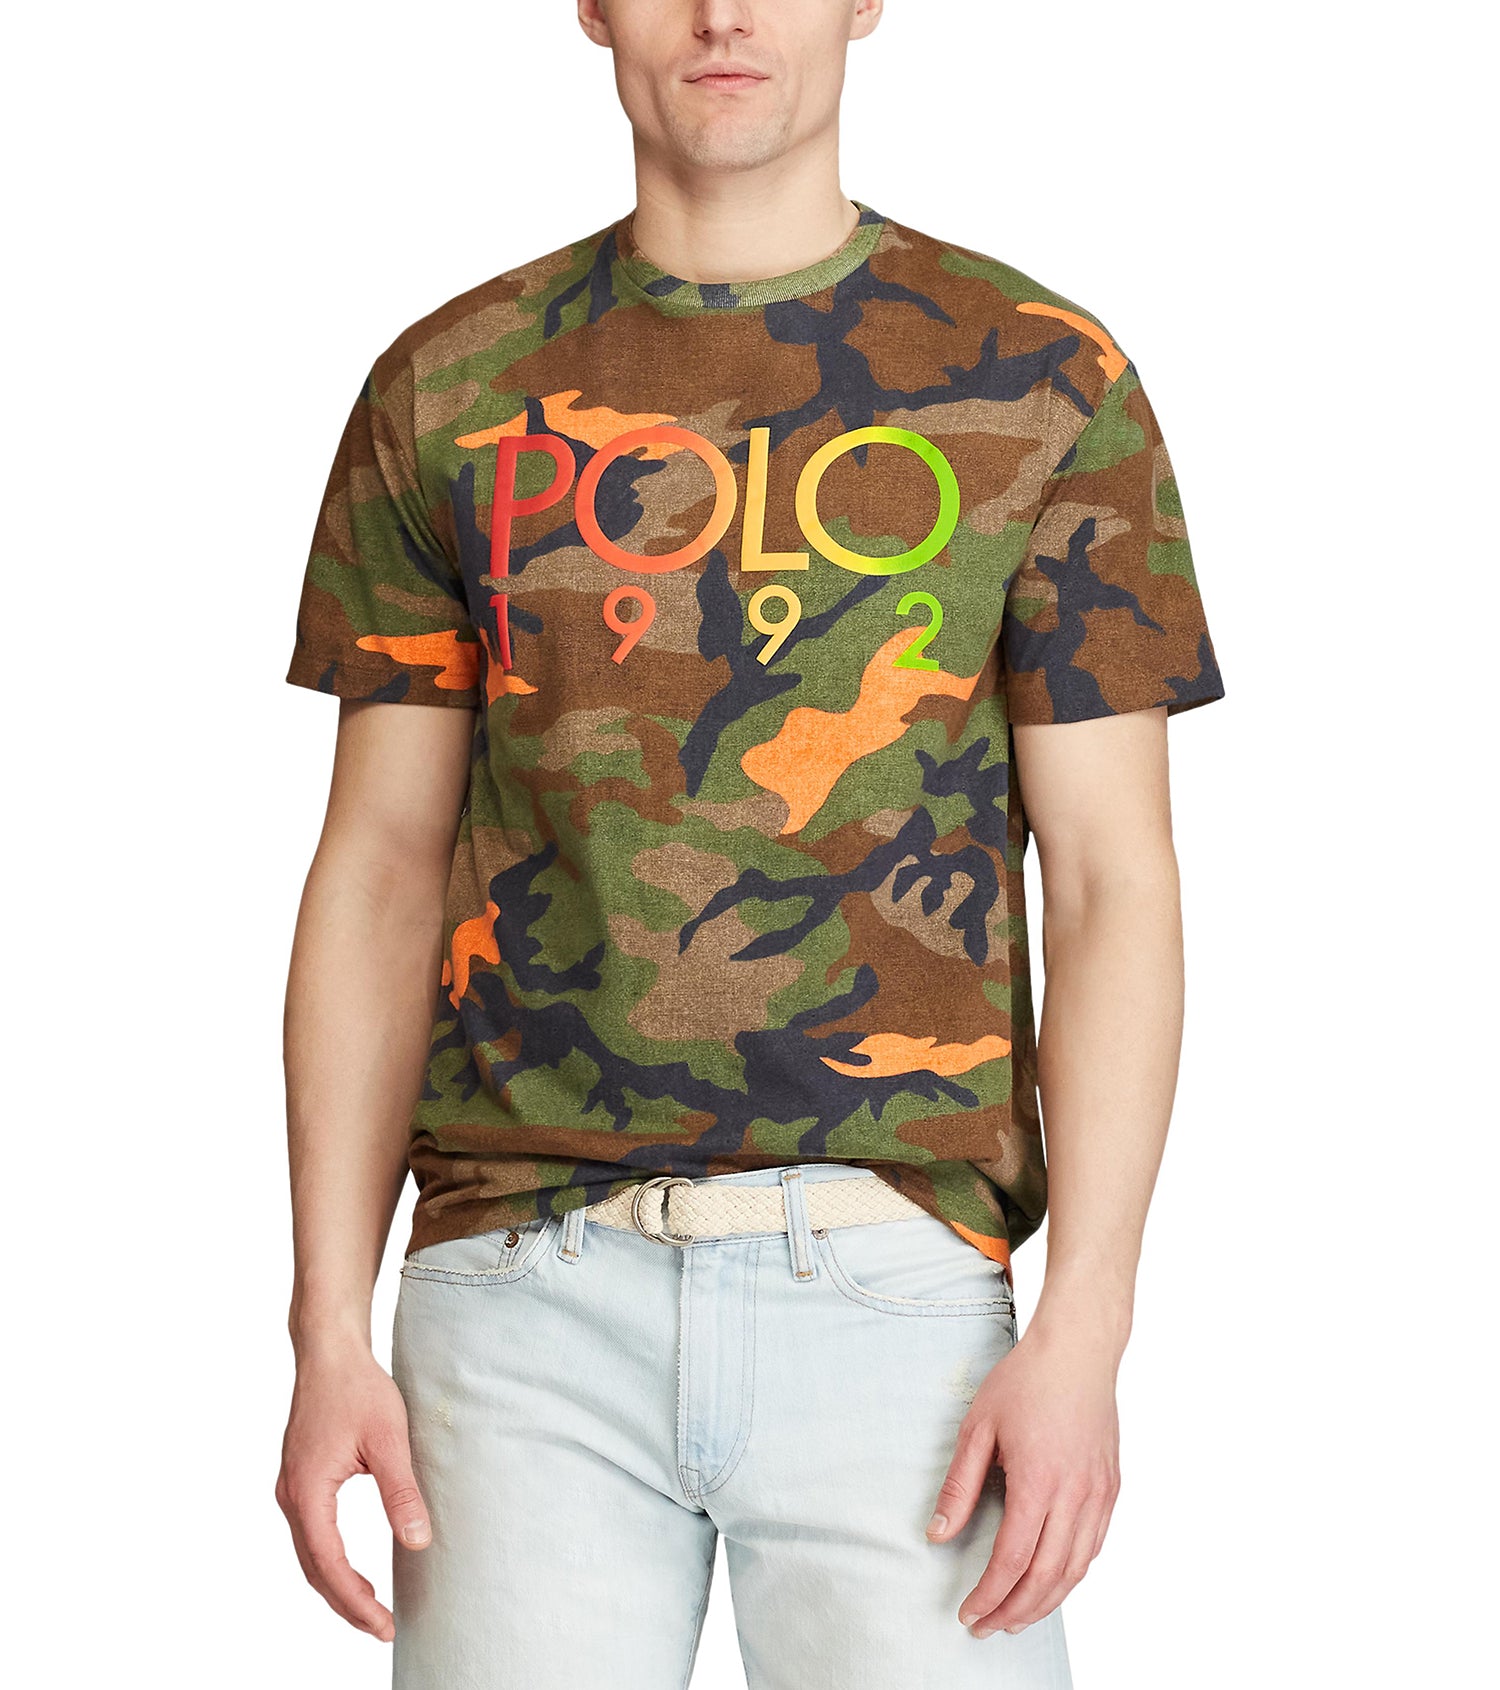 polo 1992 shirt